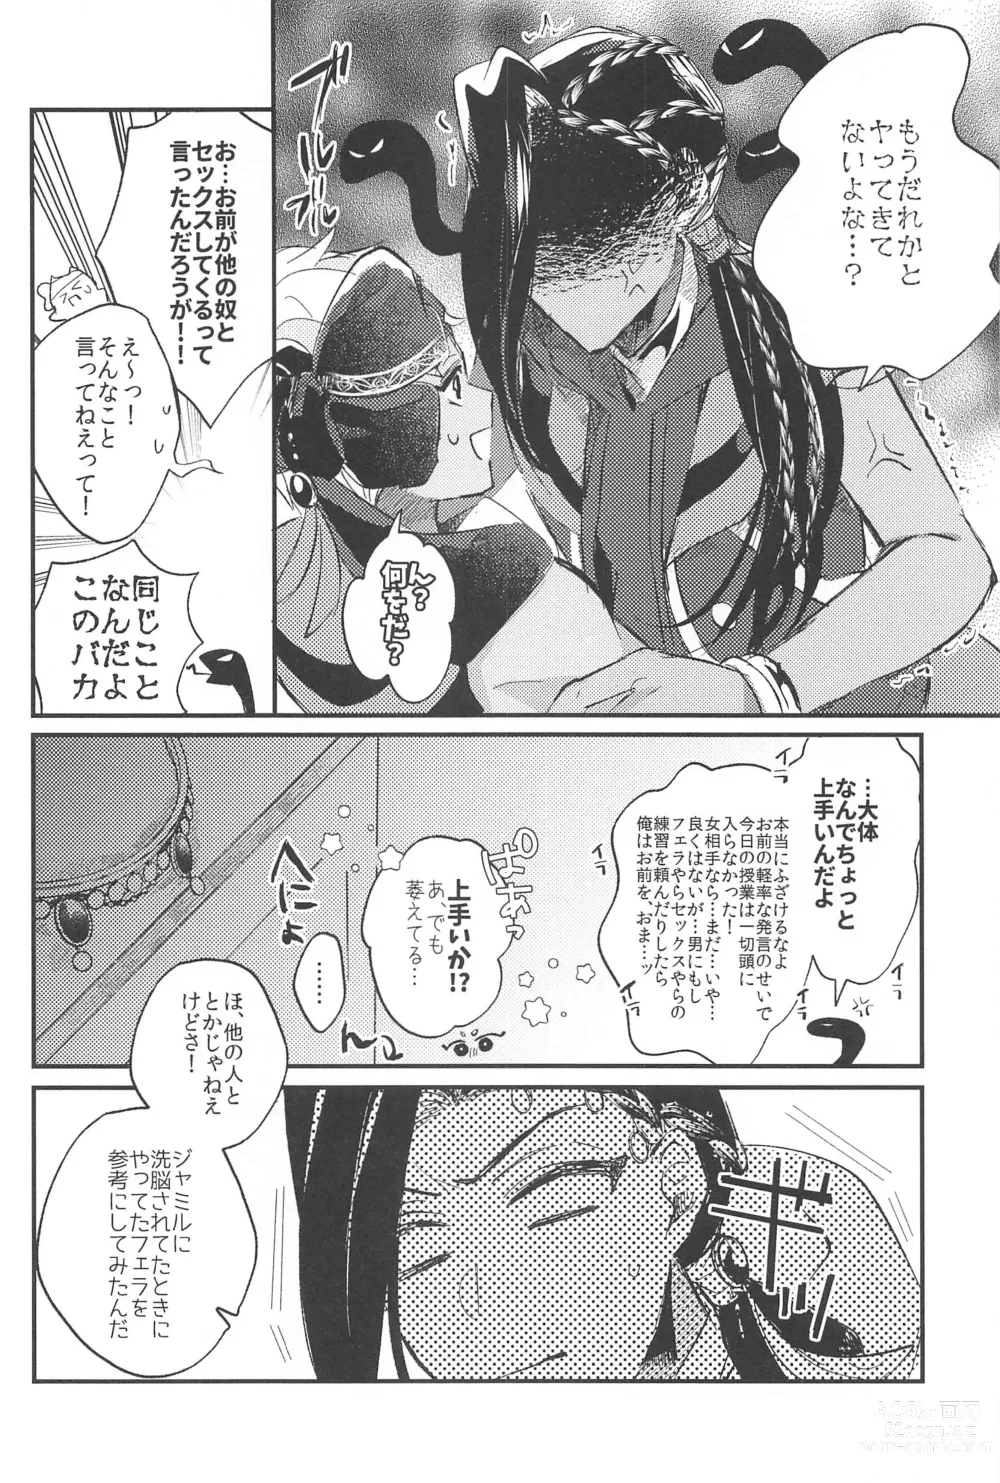 Page 36 of doujinshi Kantan dakara Muzukashii